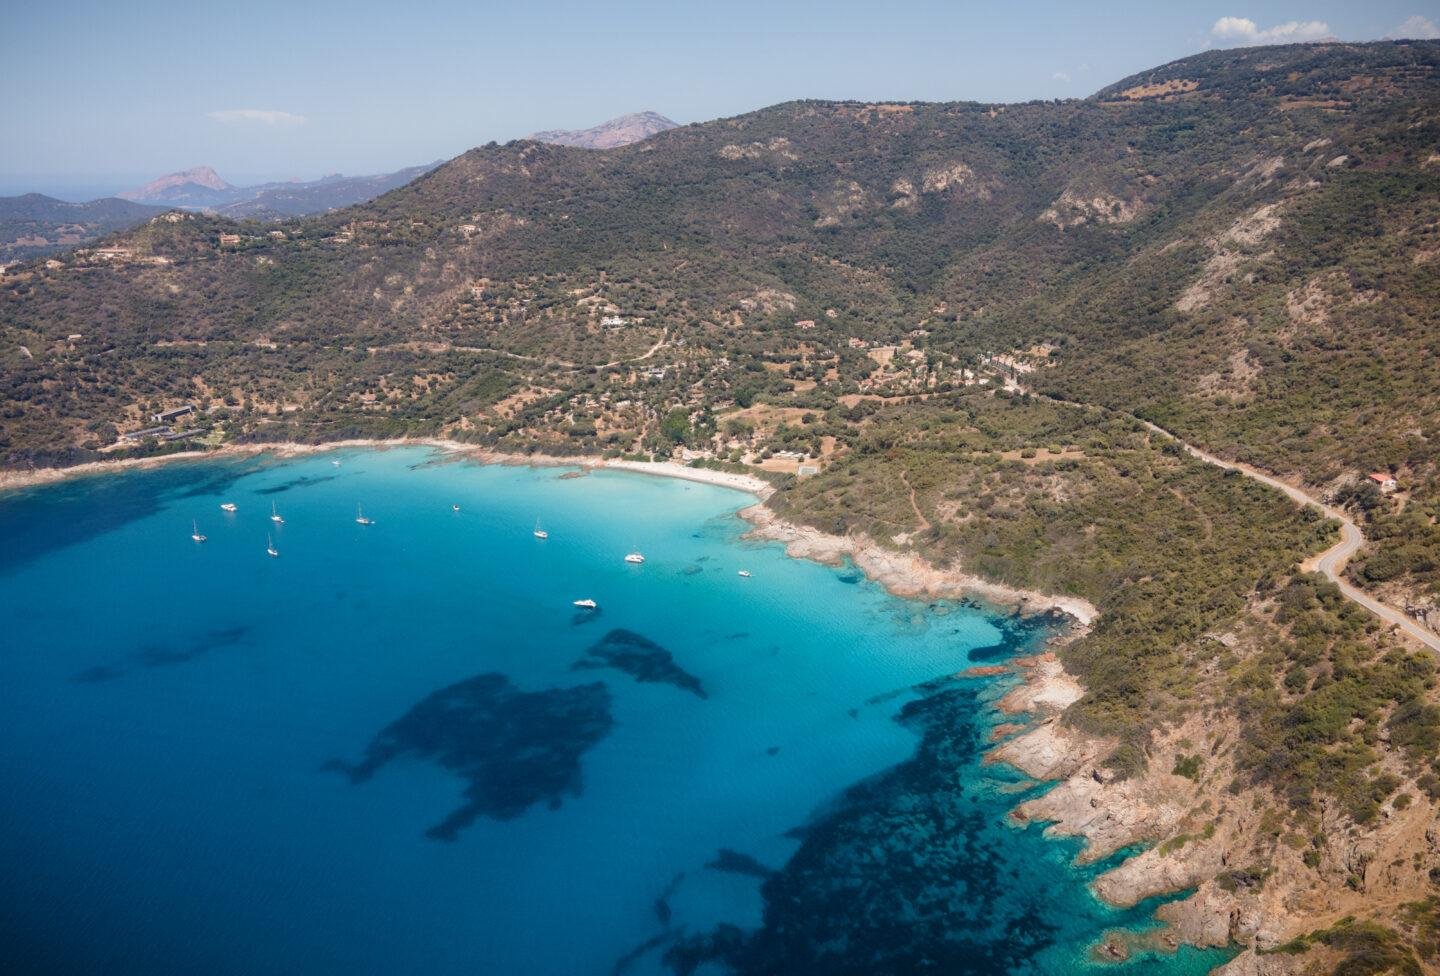 Plus belles plages de Corse